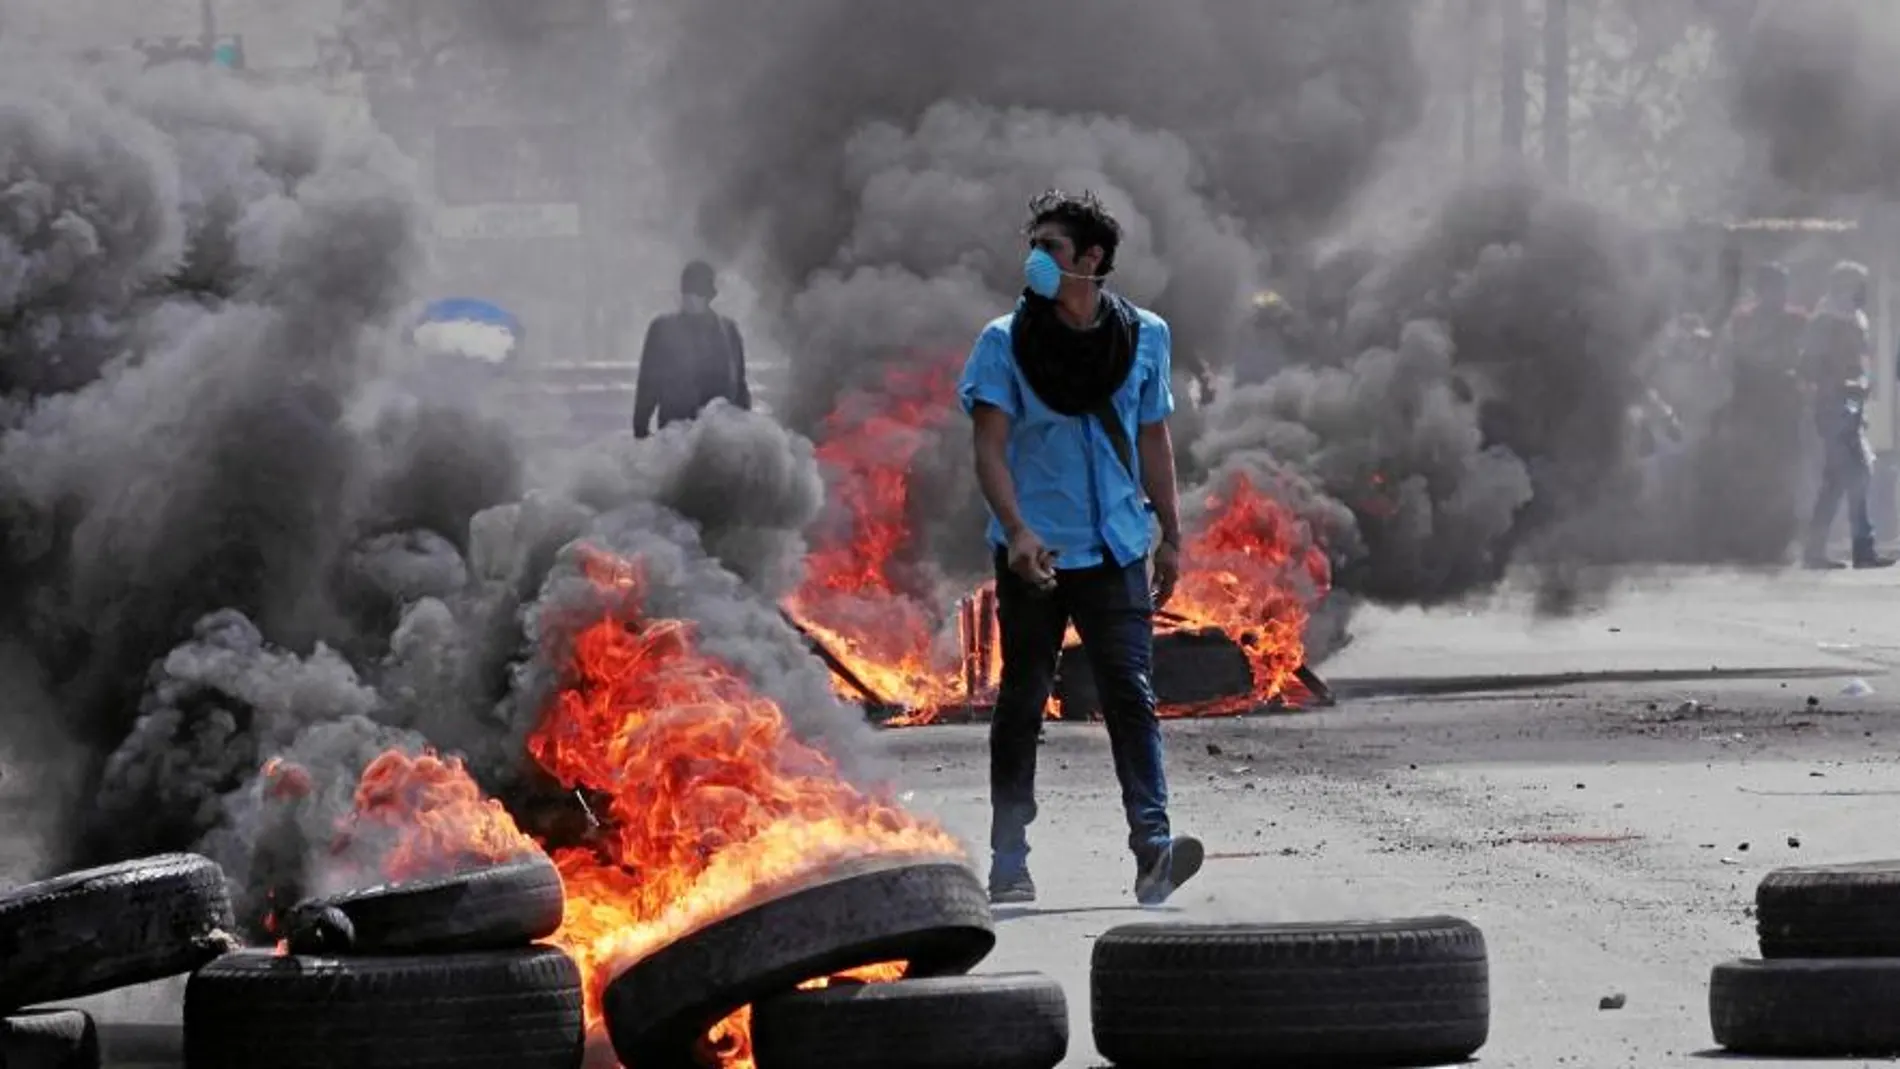 Un joven camina junto a varios neumáticos ardiendo en una calle de Nicaragura durante las protestas